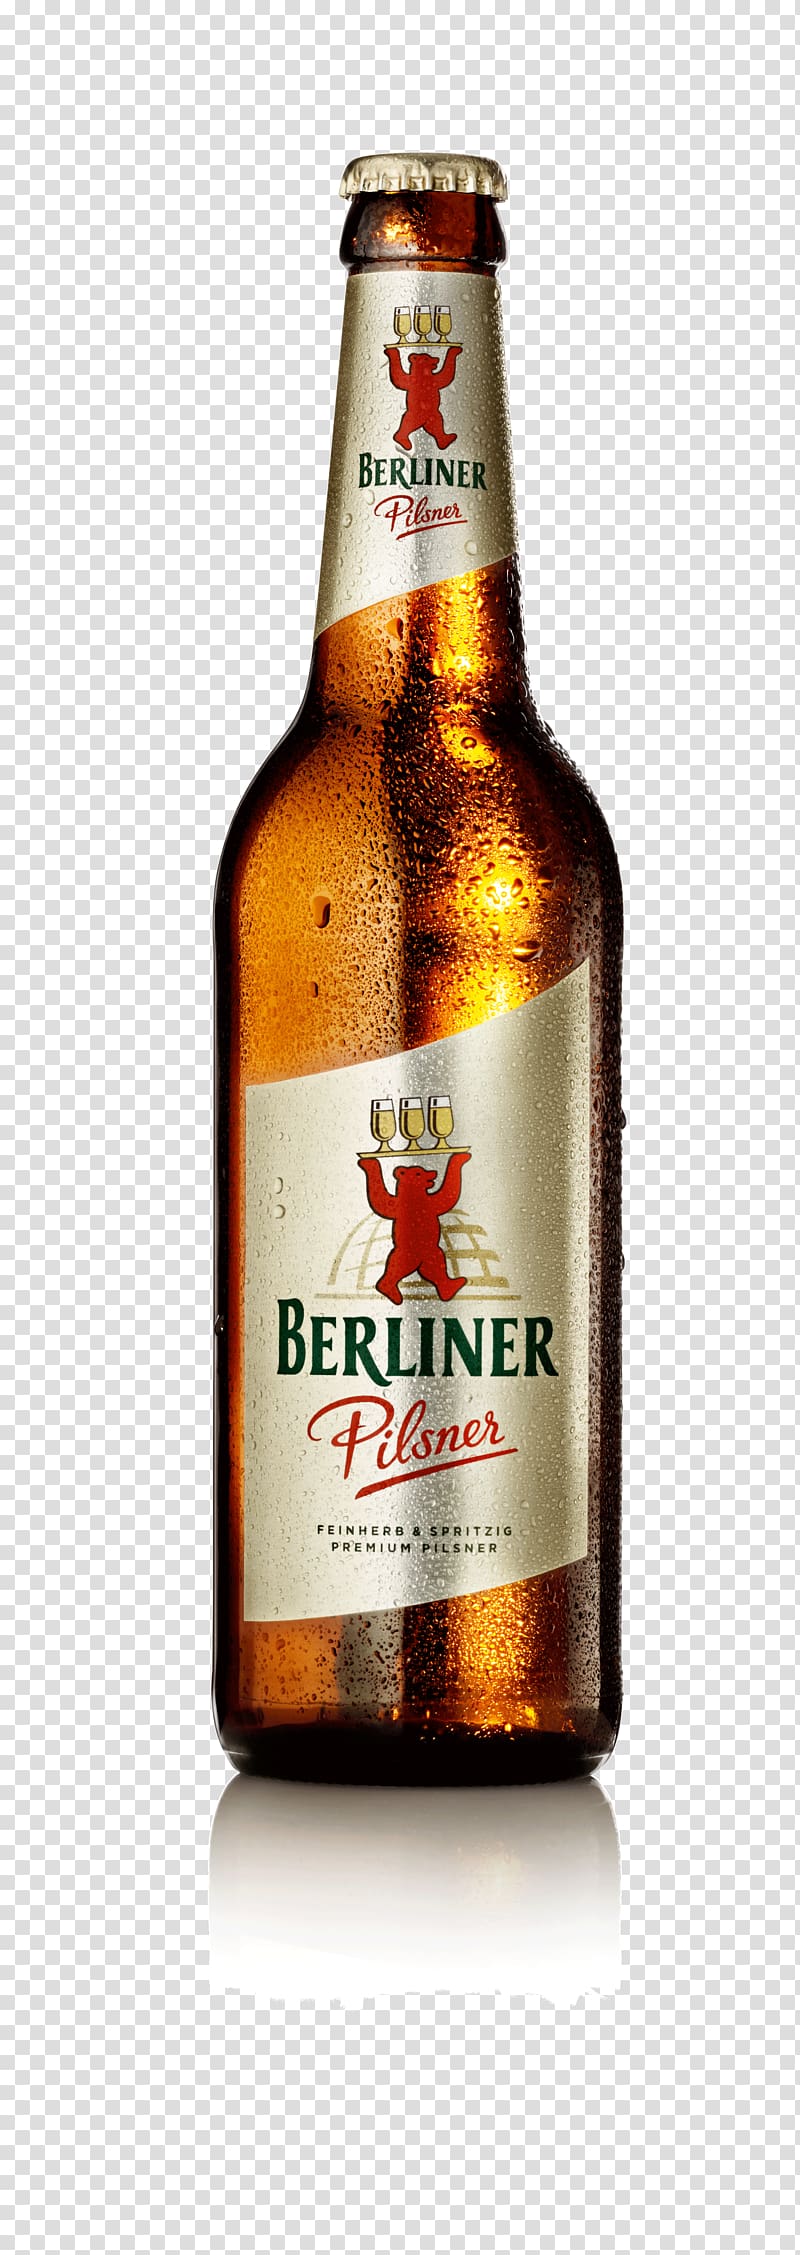 Lager Pilsner Beer bottle Ale, 300 Dpi transparent background PNG clipart